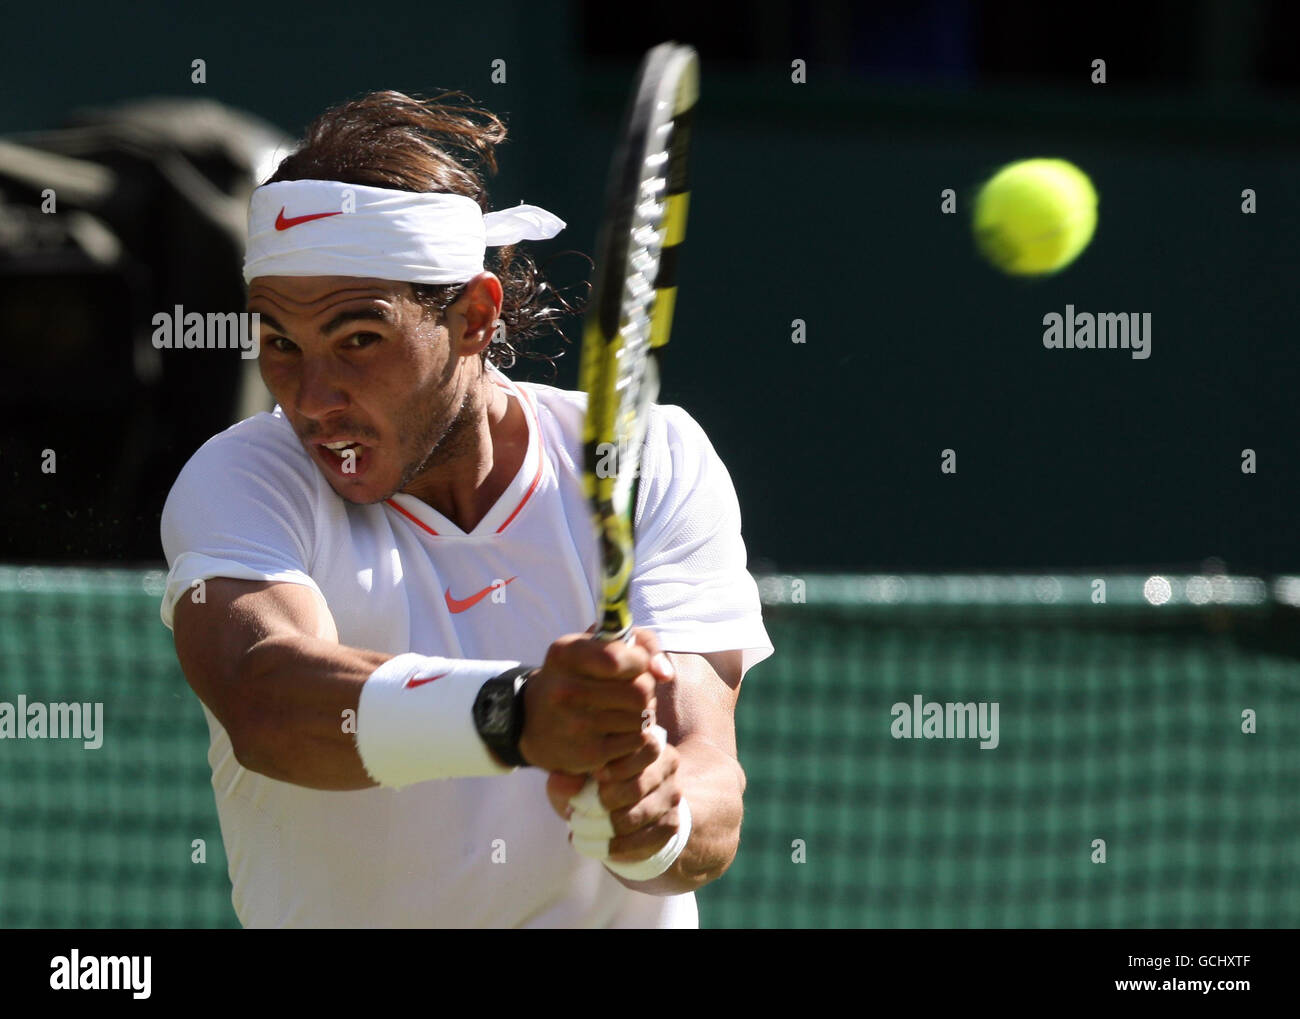 Il spagnolo Rafael Nadal in azione contro il giapponese Kei Nishikori durante il secondo giorno dei Campionati di Wimbledon 2010 all'All England Lawn Tennis Club di Wimbledon. Foto Stock